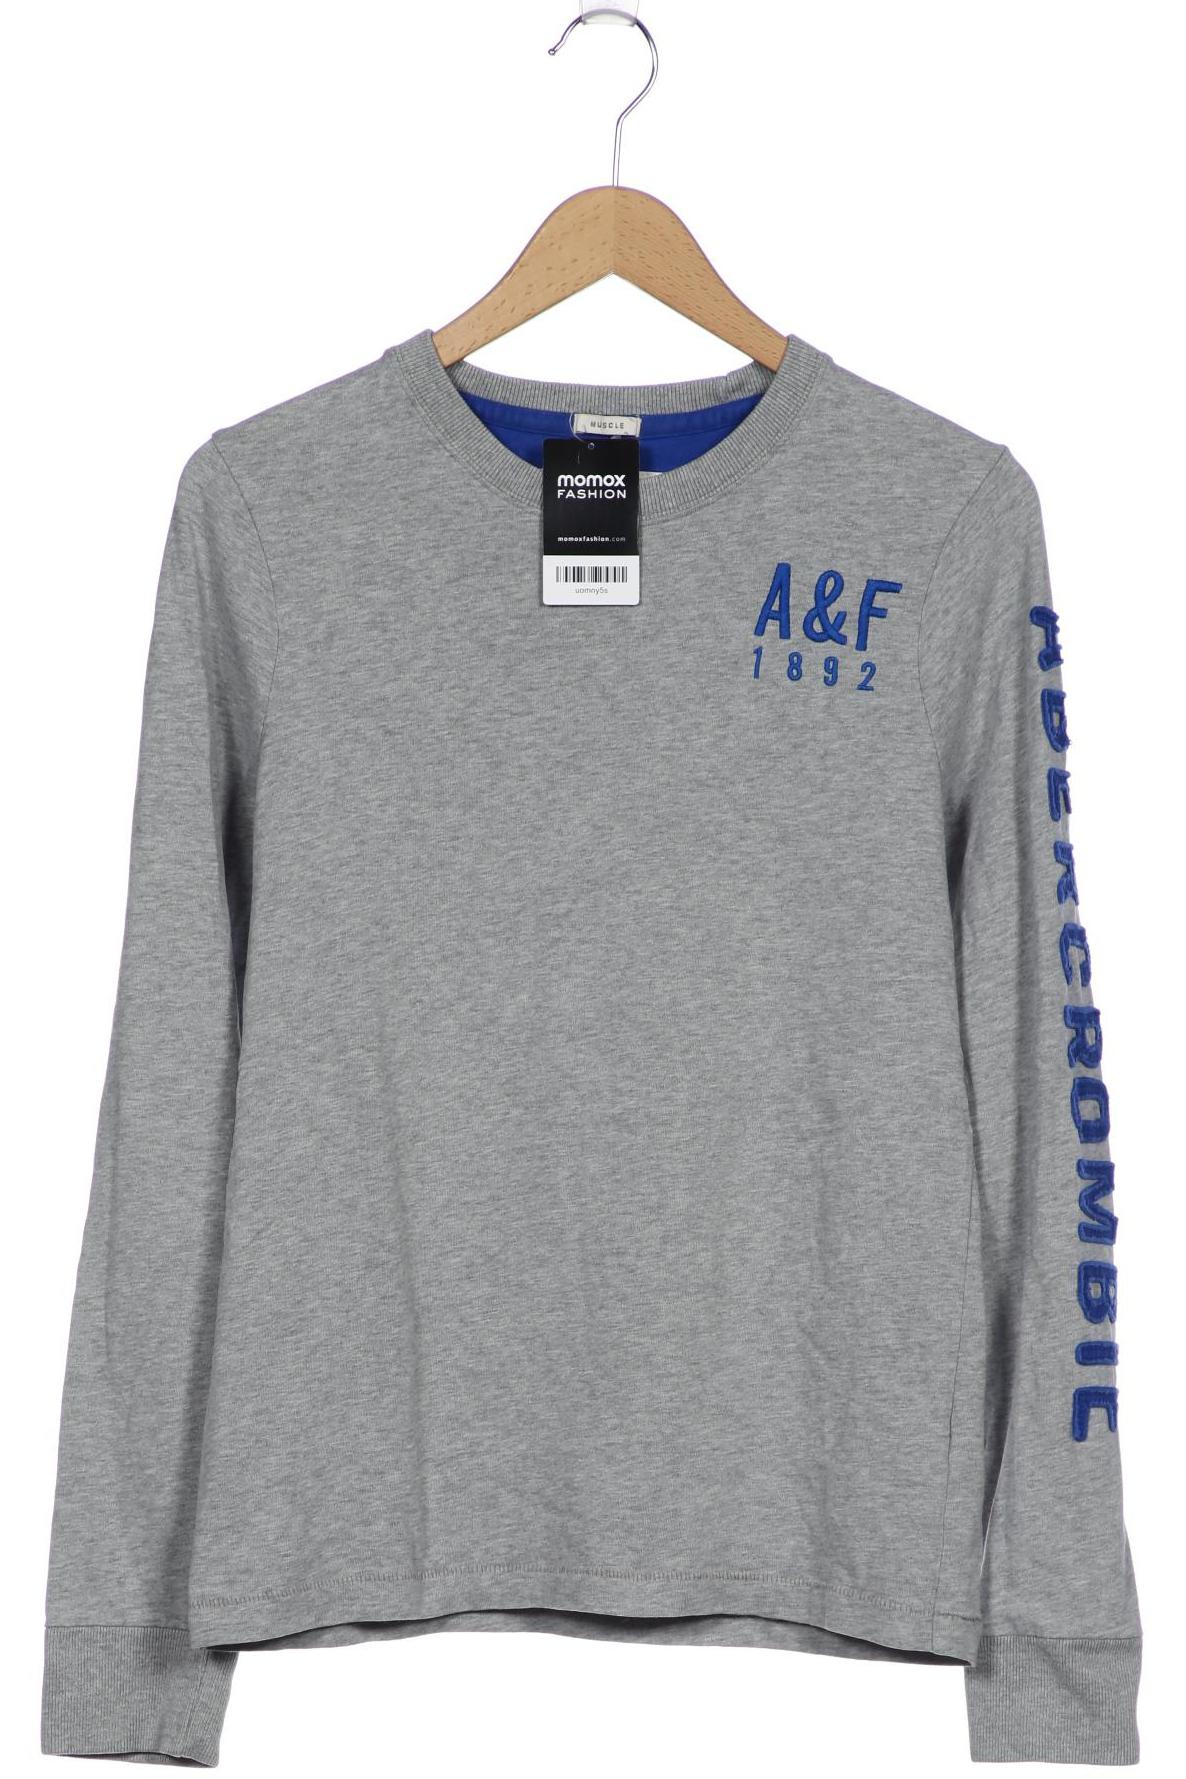 Abercrombie & Fitch Herren Sweatshirt, grau, Gr. 48 von Abercrombie & Fitch